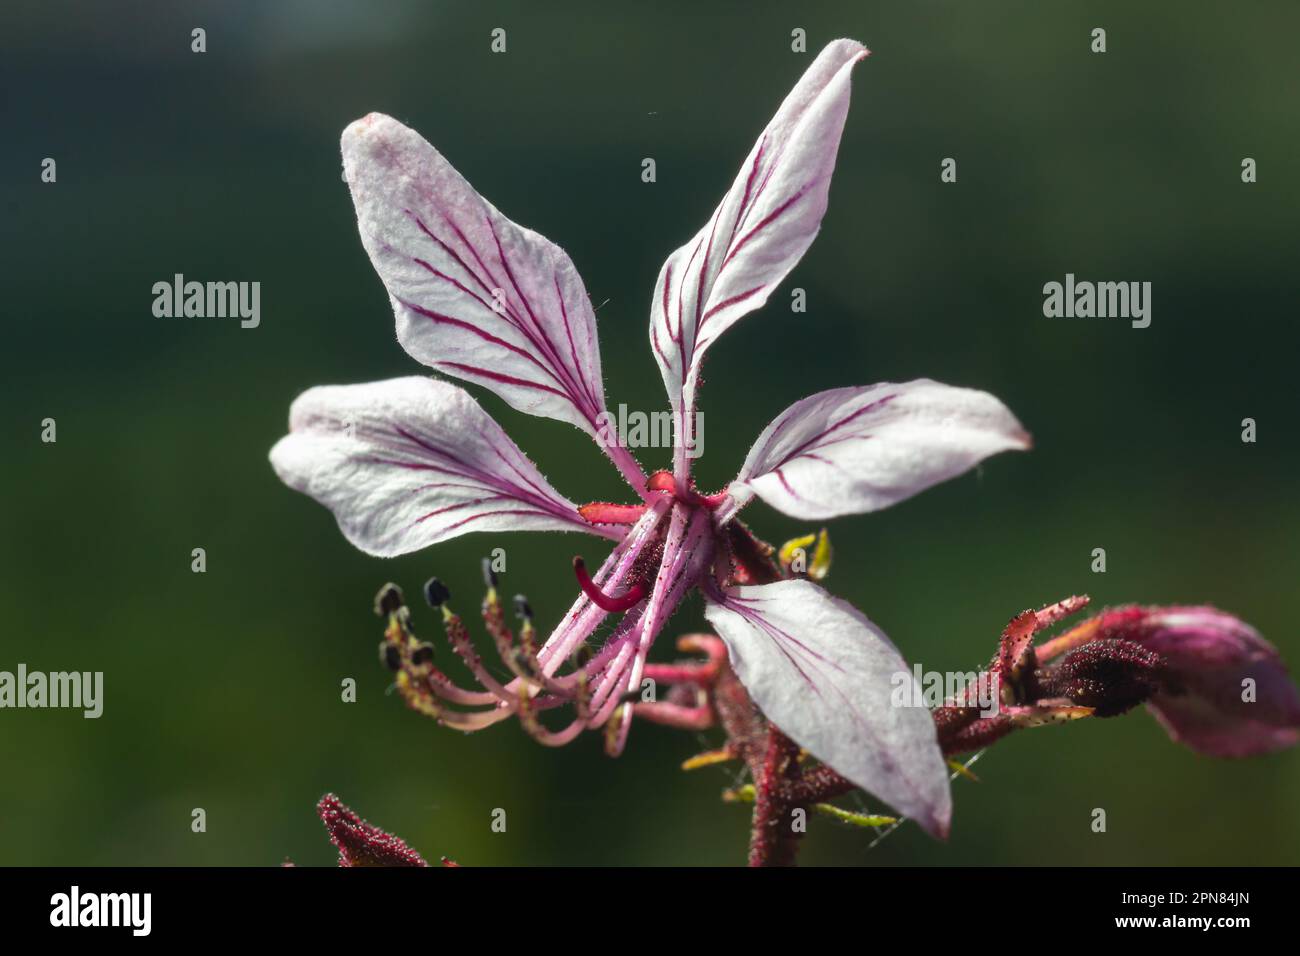 Burning-bush, Dictamnus albus. Dictamnus is a genus of flowering plant in the family Rutaceae. Stock Photo